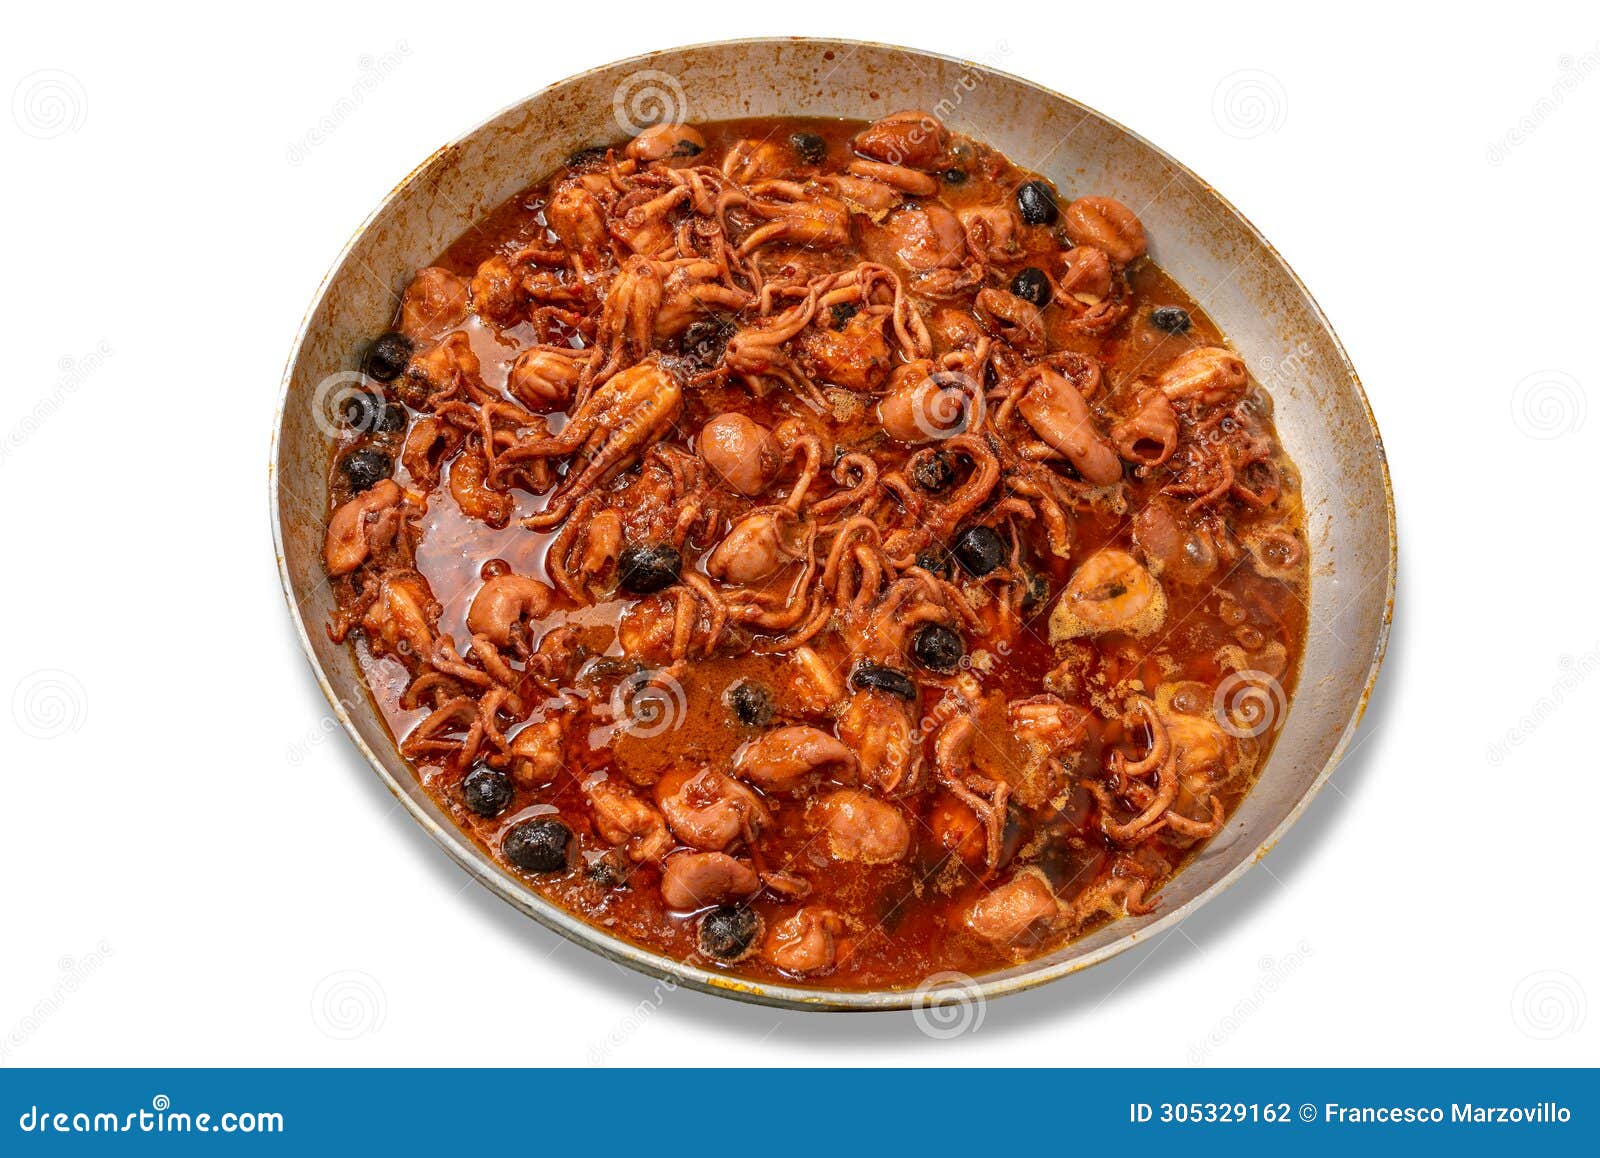 baby octopus in tomato sauce in aluminium pan